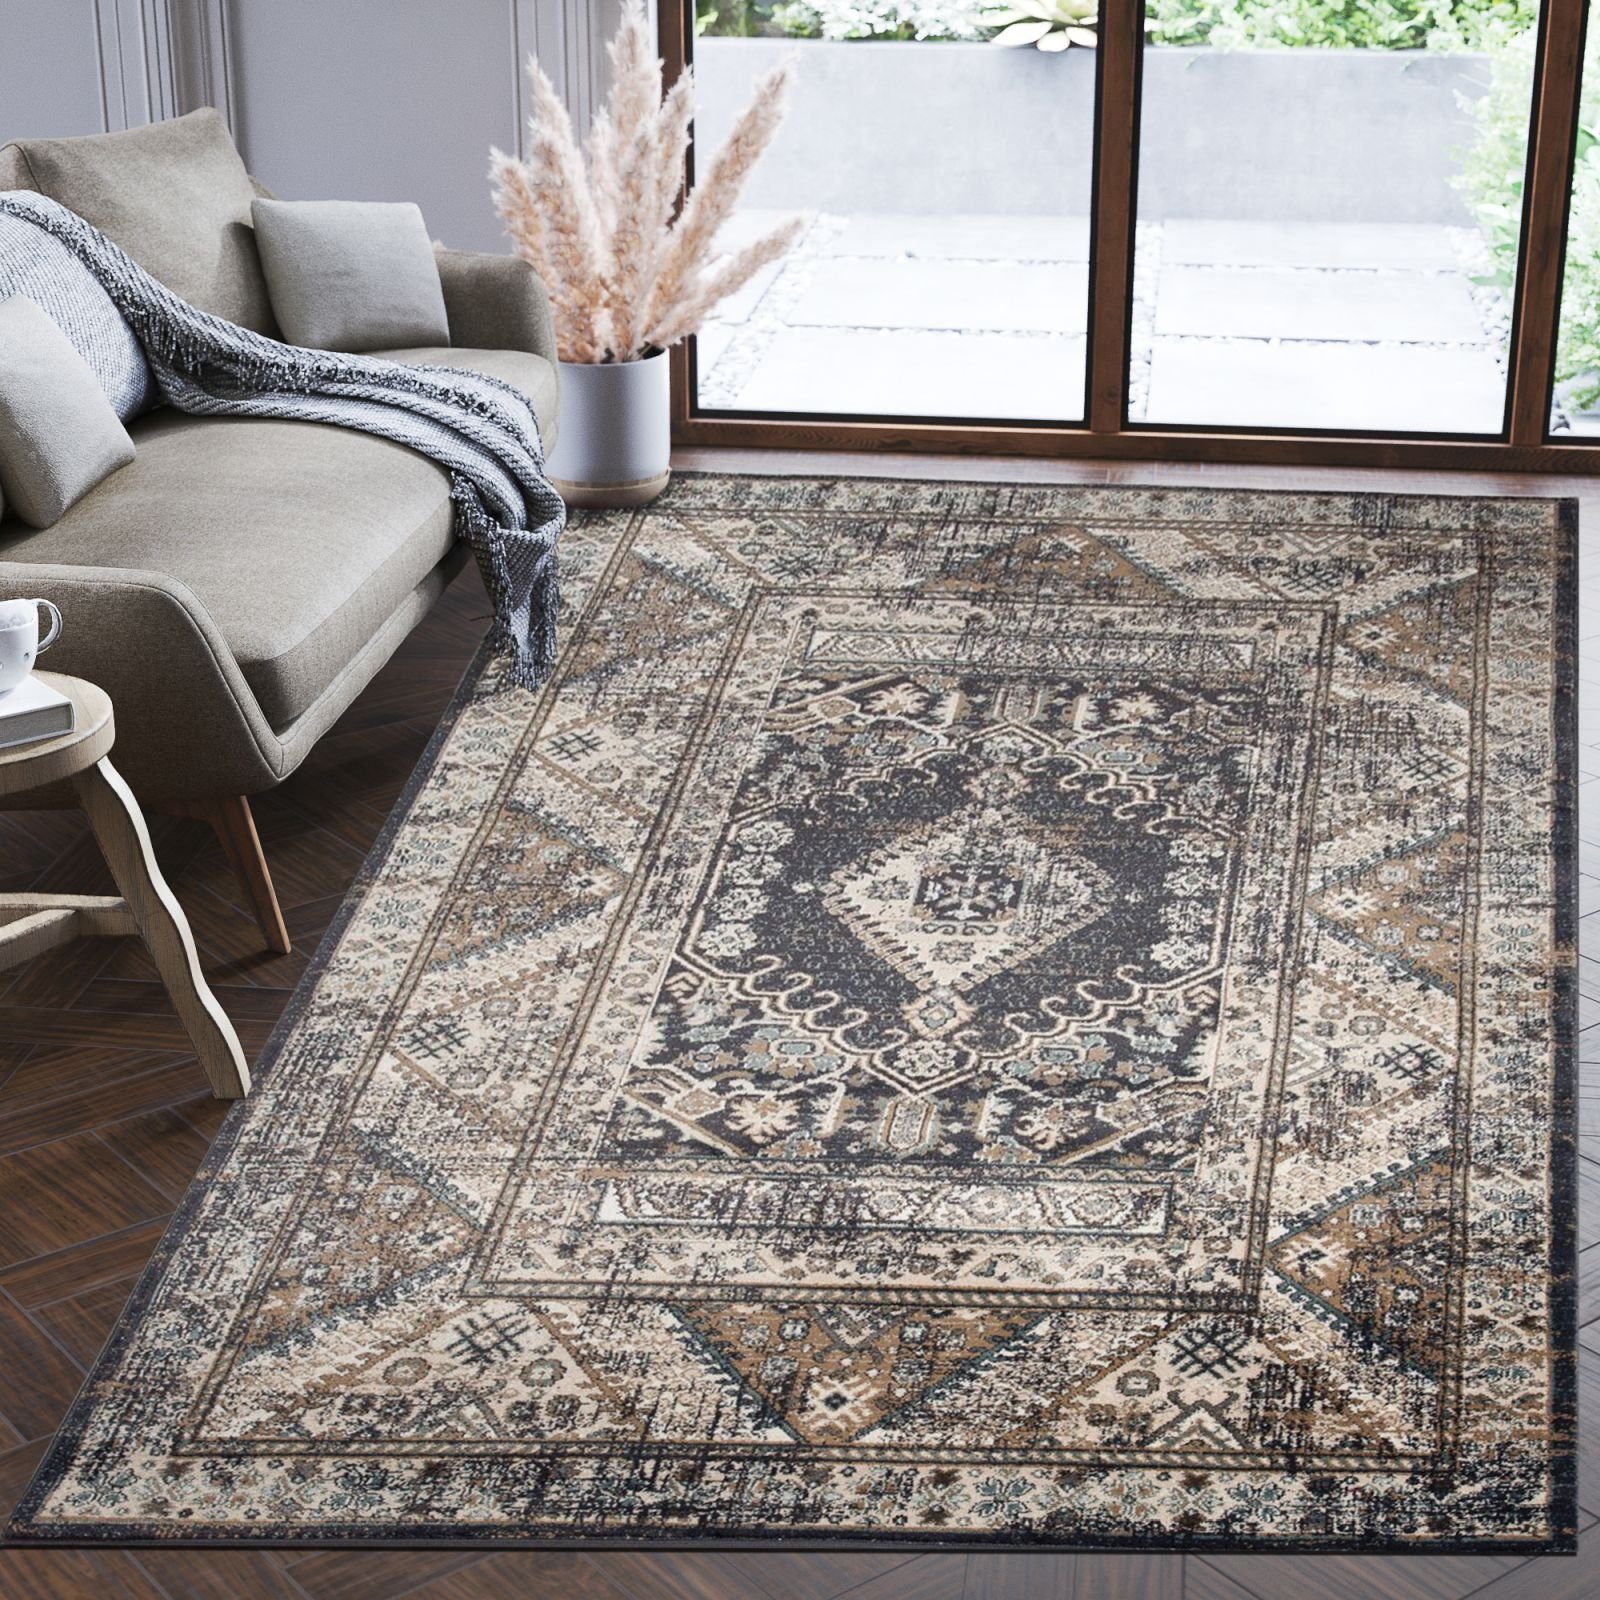 Orientteppich Oriente Teppich - Traditioneller Teppich Orient Grau Schwarz, Mazovia, 60 x 100 cm, Geeignet für Fußbodenheizung, Pflegeleicht, Wohnzimmerteppich